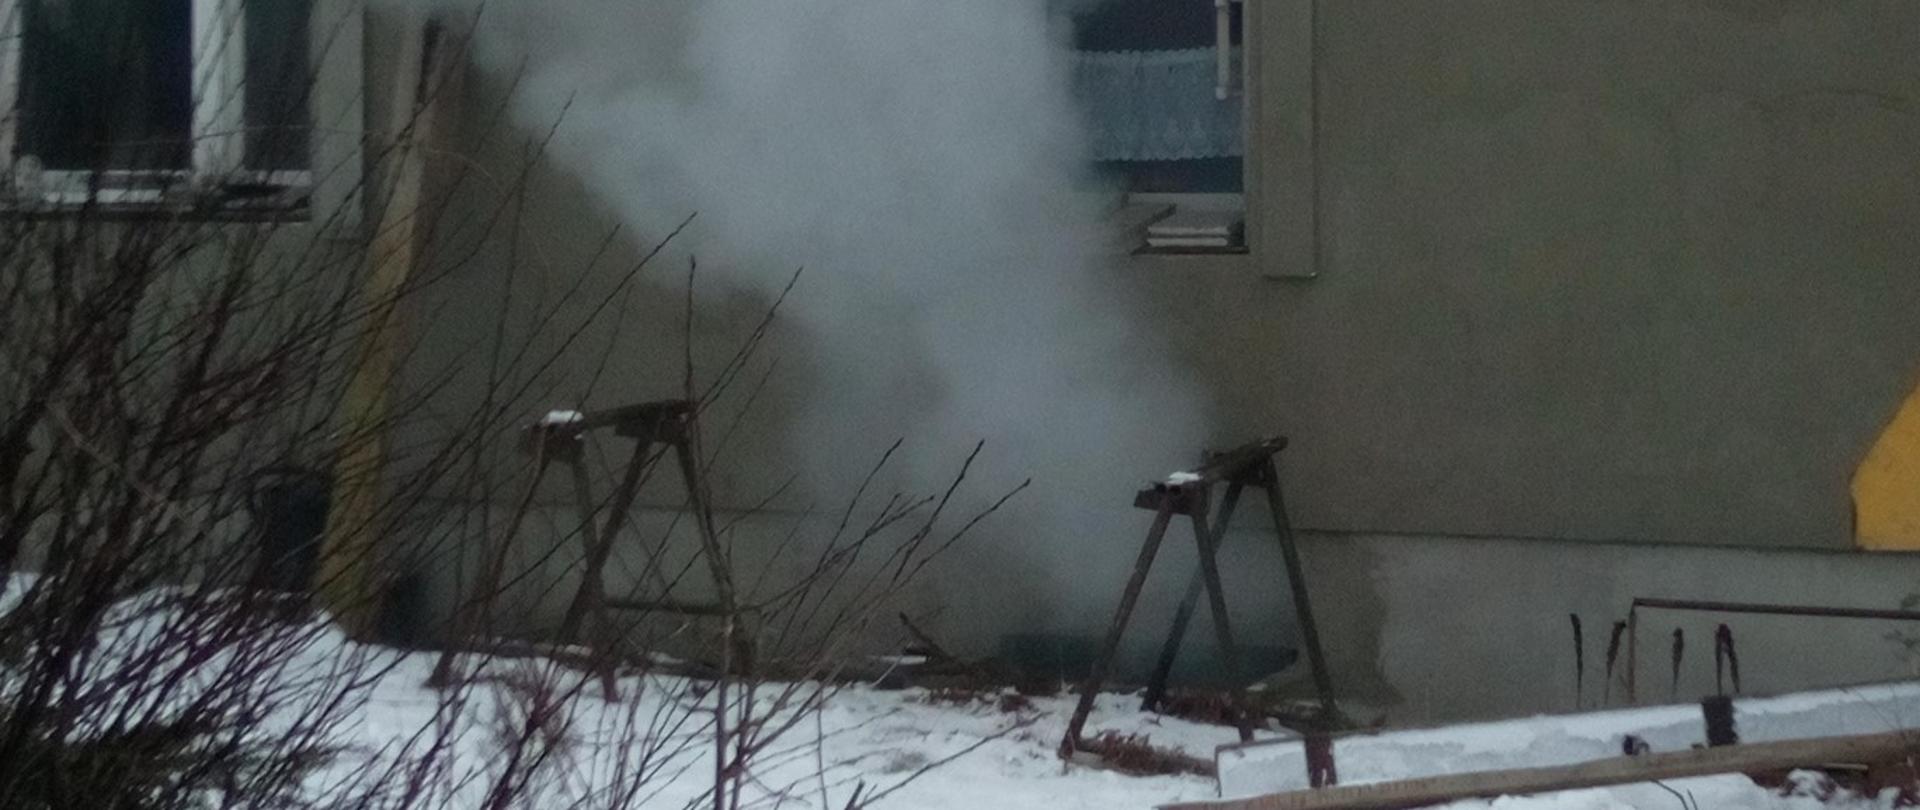 Na zdjęciu widać gęsty dym wydobywający się z okienka piwnicznego z pomieszczenia, w którym wybuchł pożar